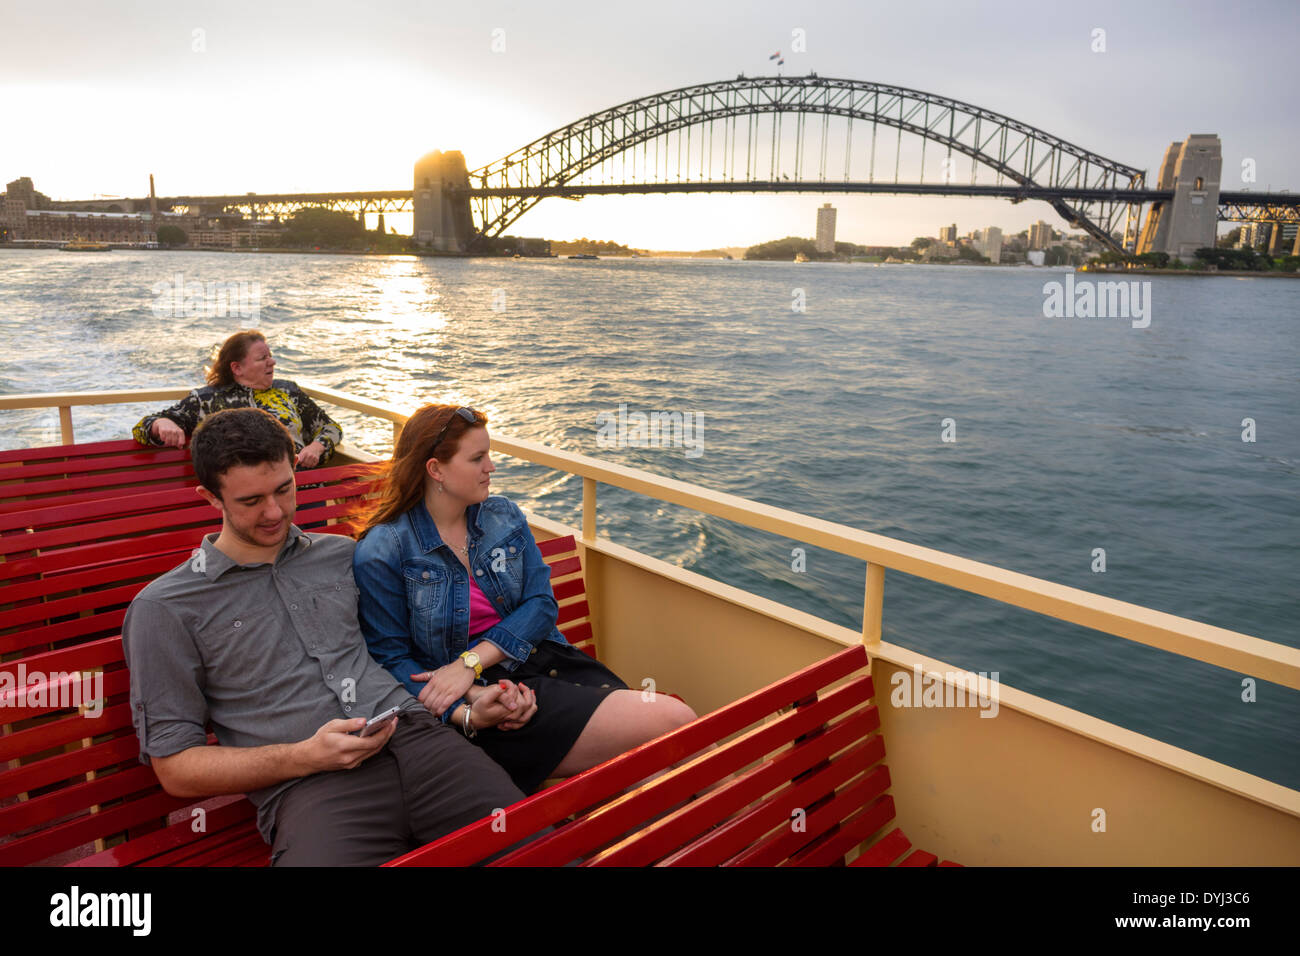 Sydney Australie, Sydney Harbour Bridge, port, rivière Parramatta, Circular Quay, F2, ferry, Mosman Bay, homme homme homme, femme femme femme, couple, passe passager Banque D'Images